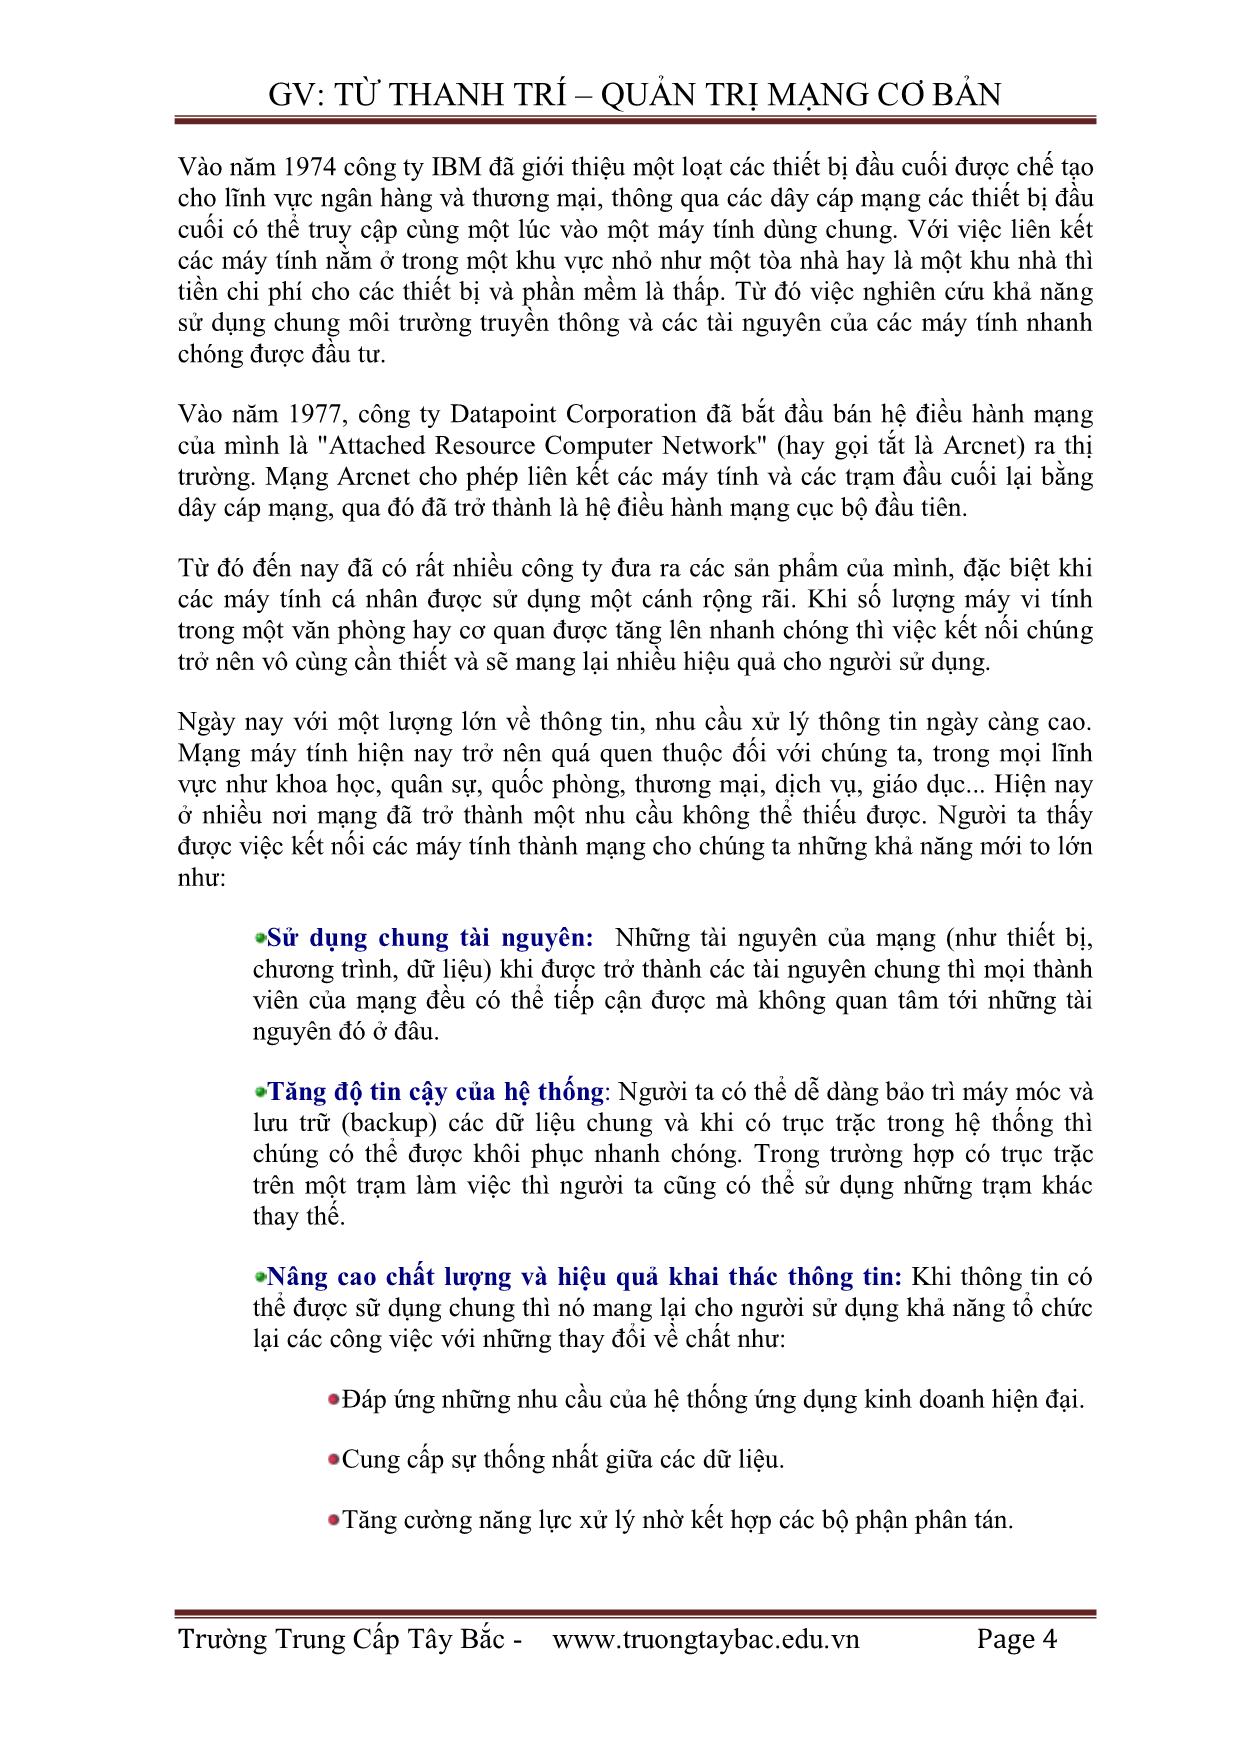 Giáo trình Quản trị mạng - Từ Thanh Trí trang 5